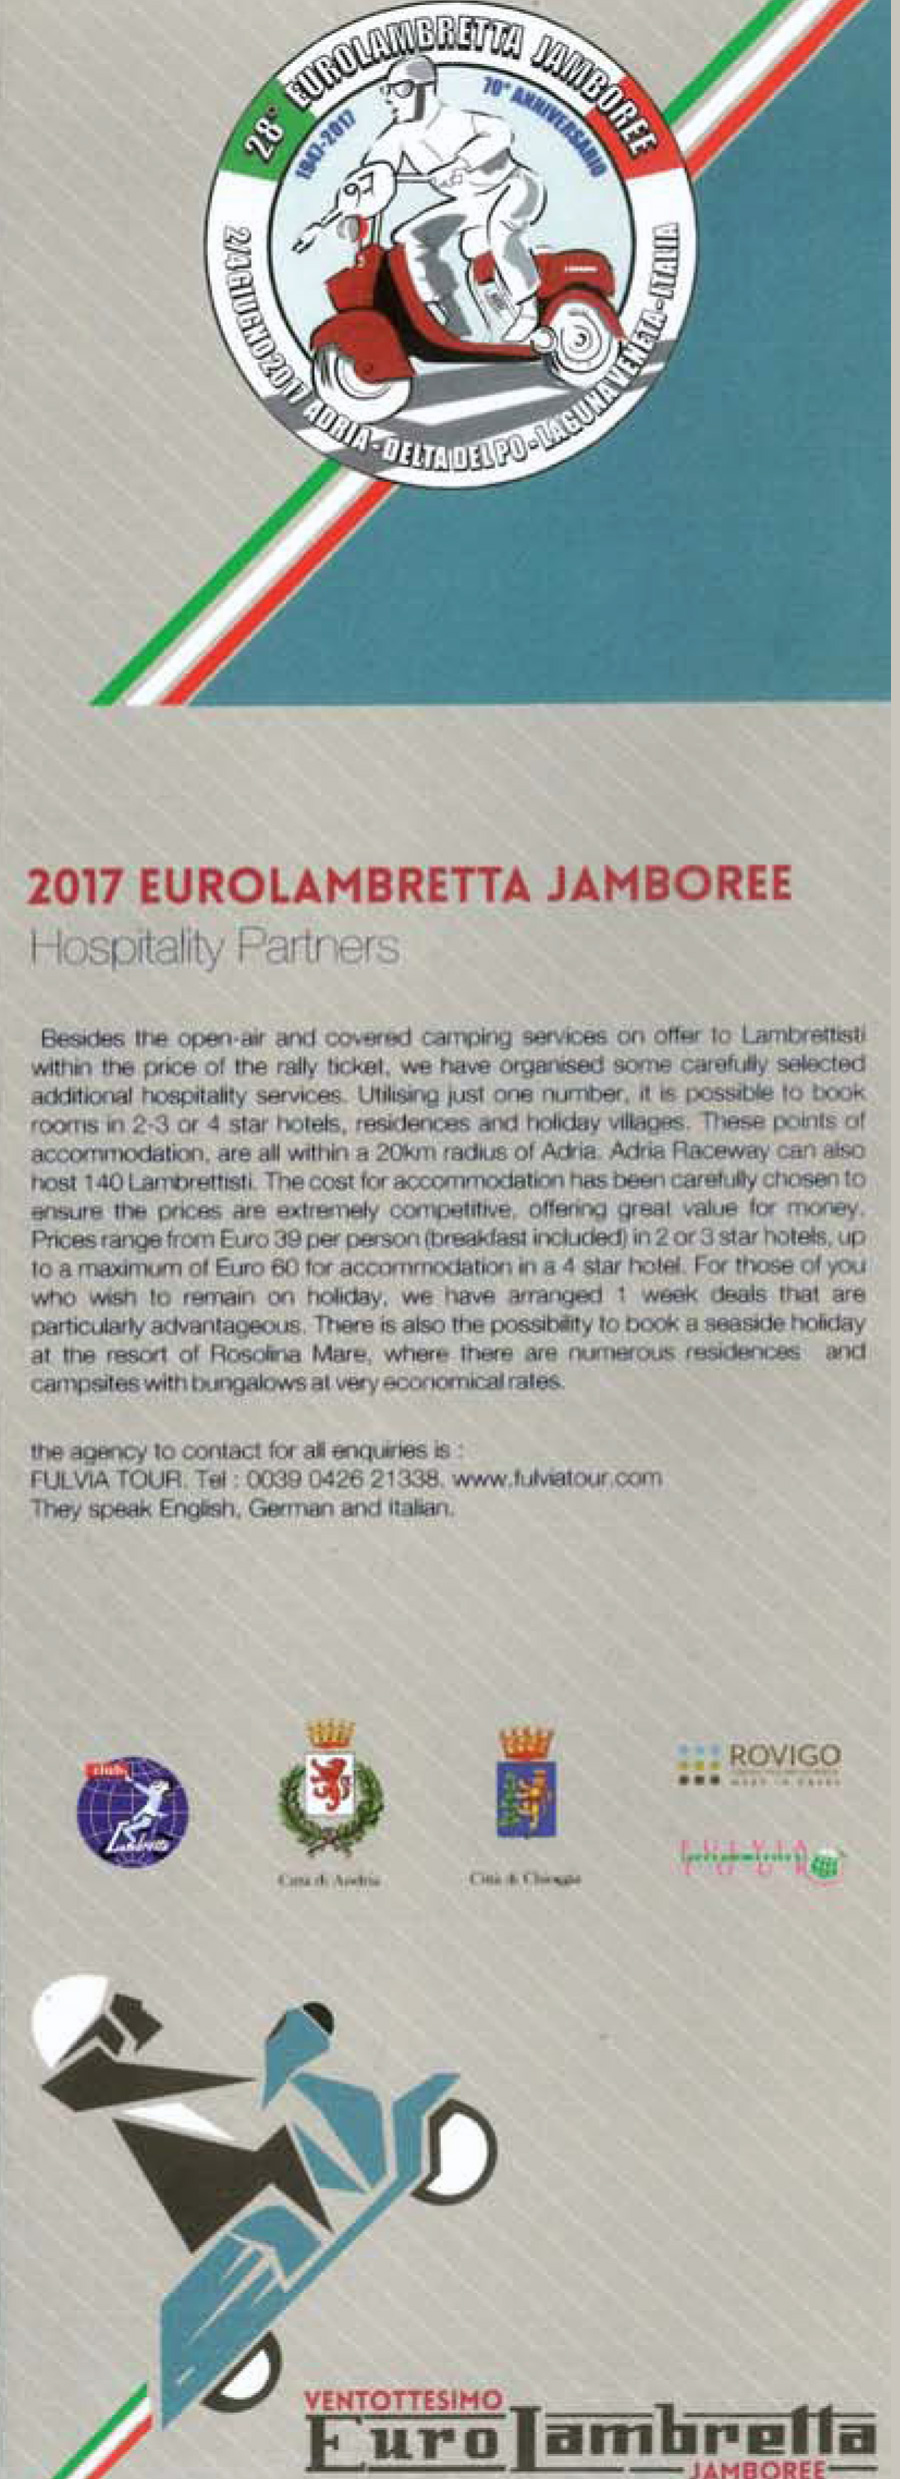 Eurolambretta 2017 Italy